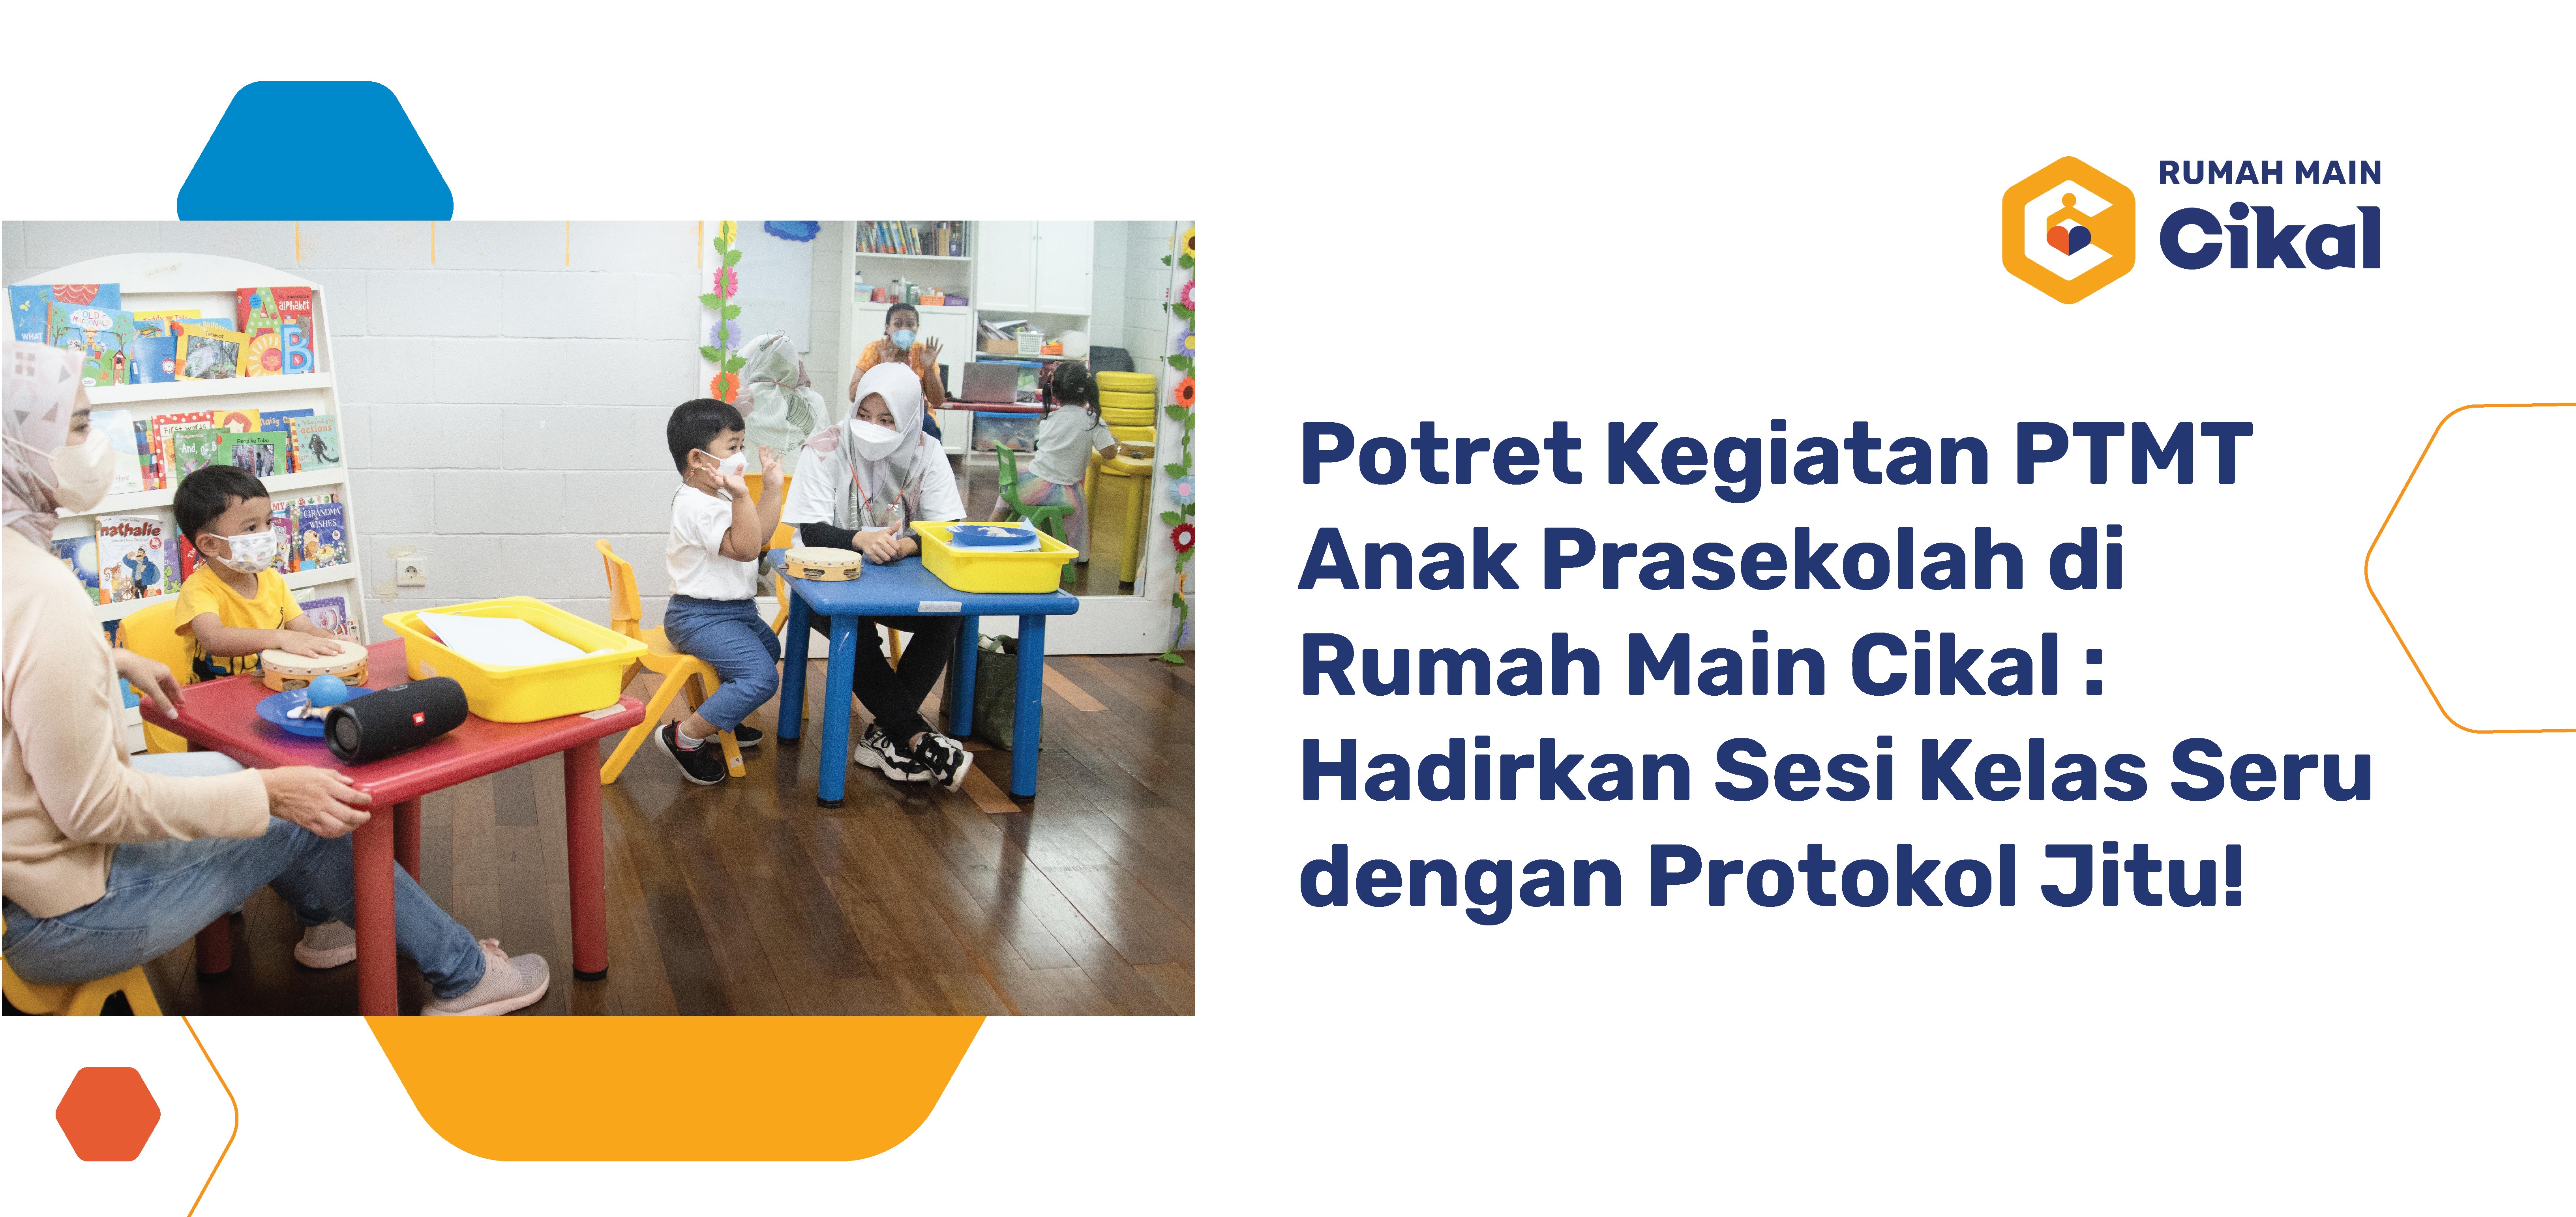 Potret Kegiatan PTMT Anak Prasekolah di Rumah Main Cikal : Hadirkan Sesi Kelas Seru dengan Protokol Jitu!